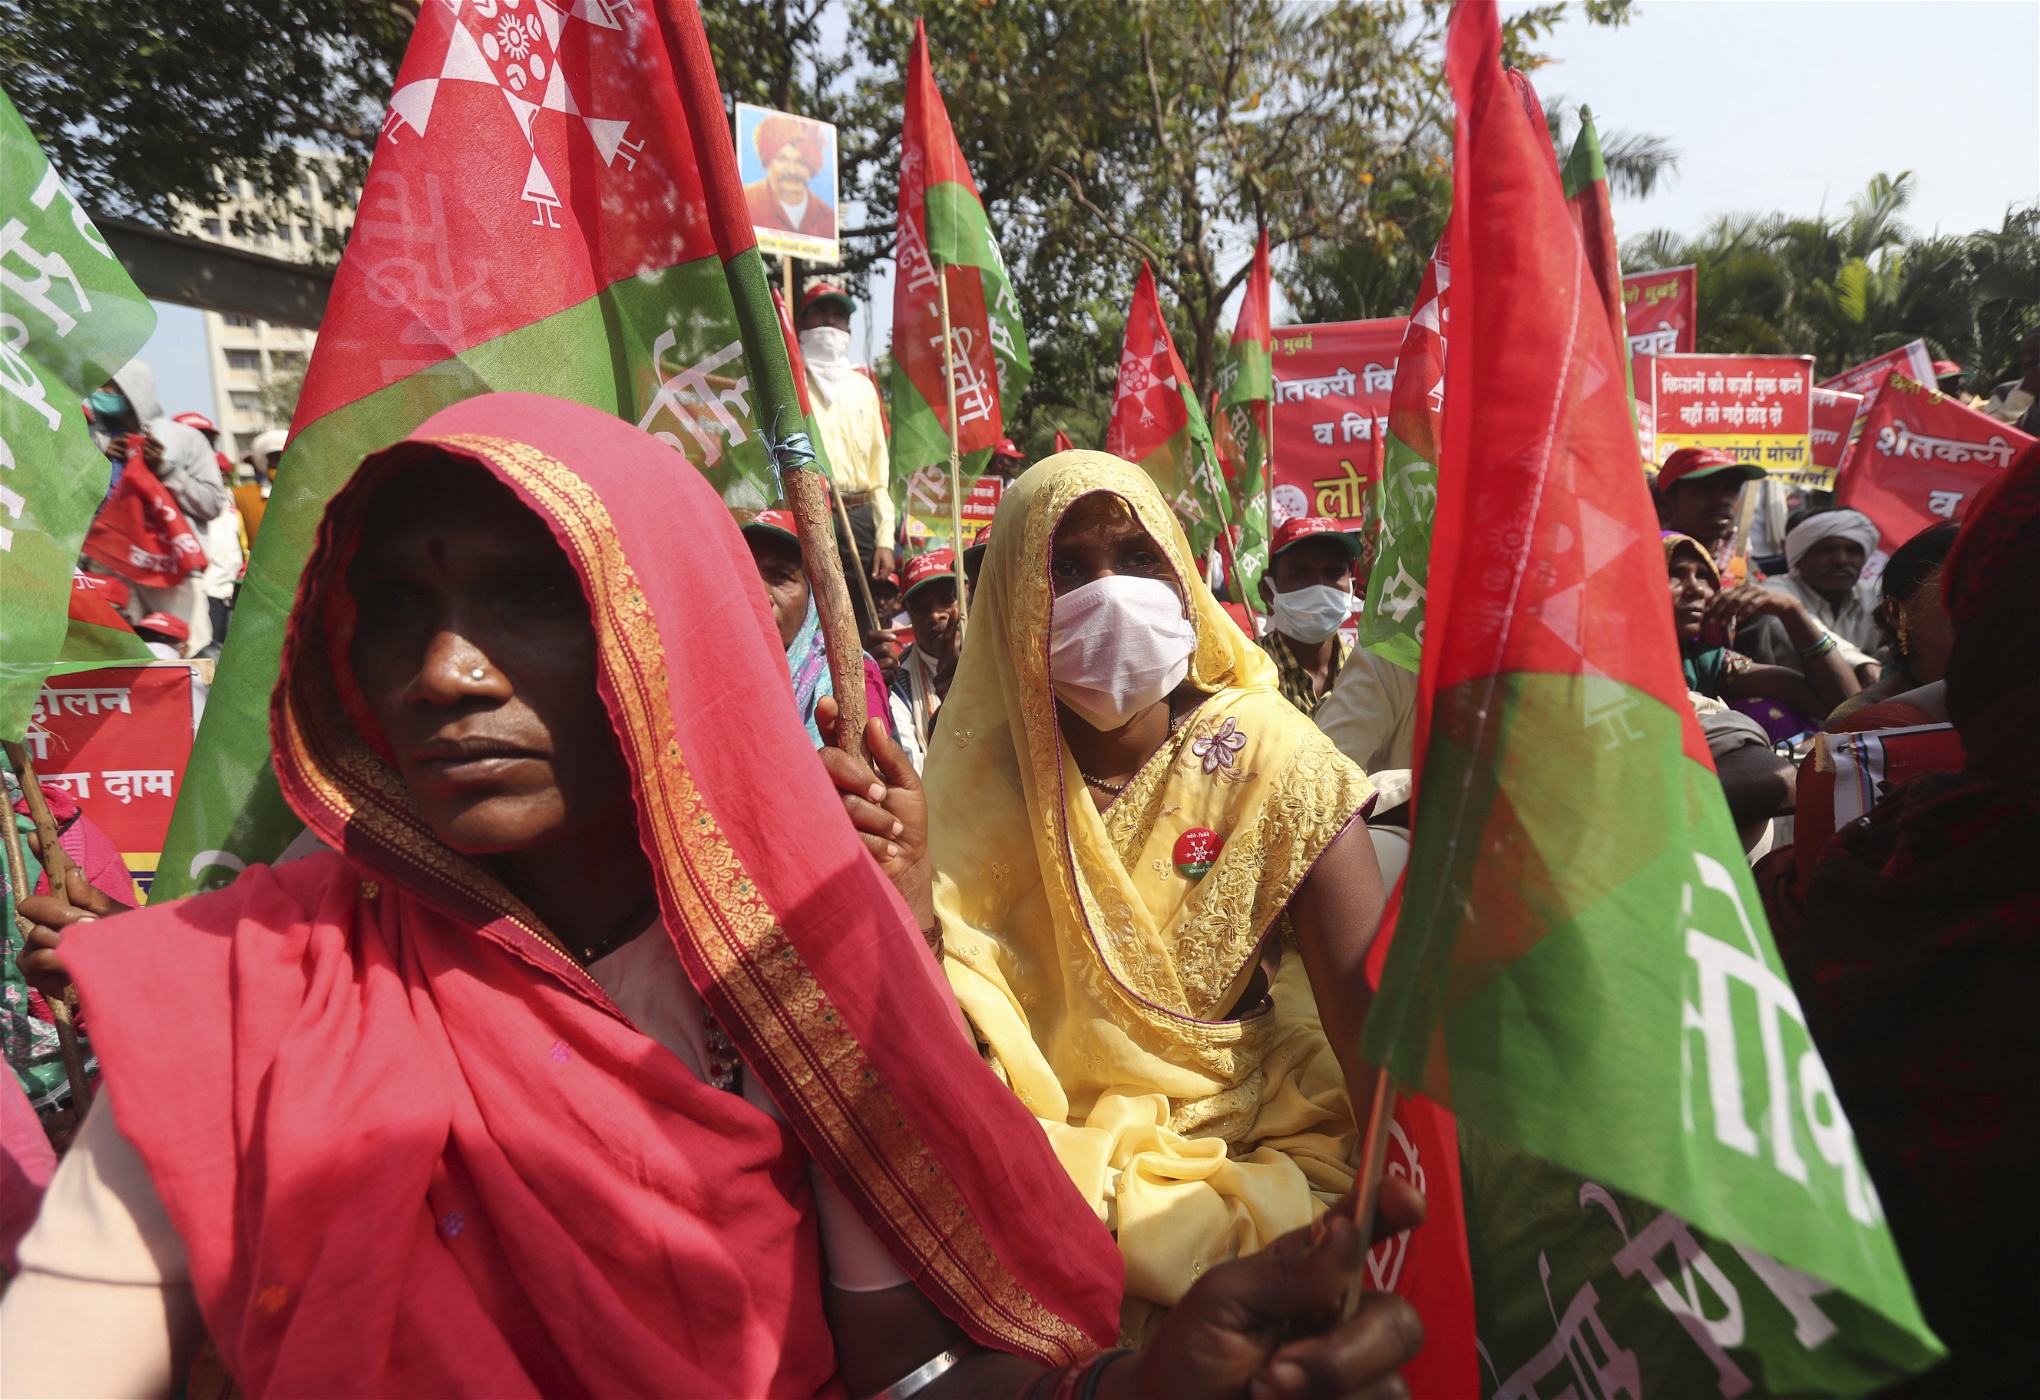 Indiska kvinnliga bönder i röda och gula saris och med röda och gröna flaggor demonstrerar.